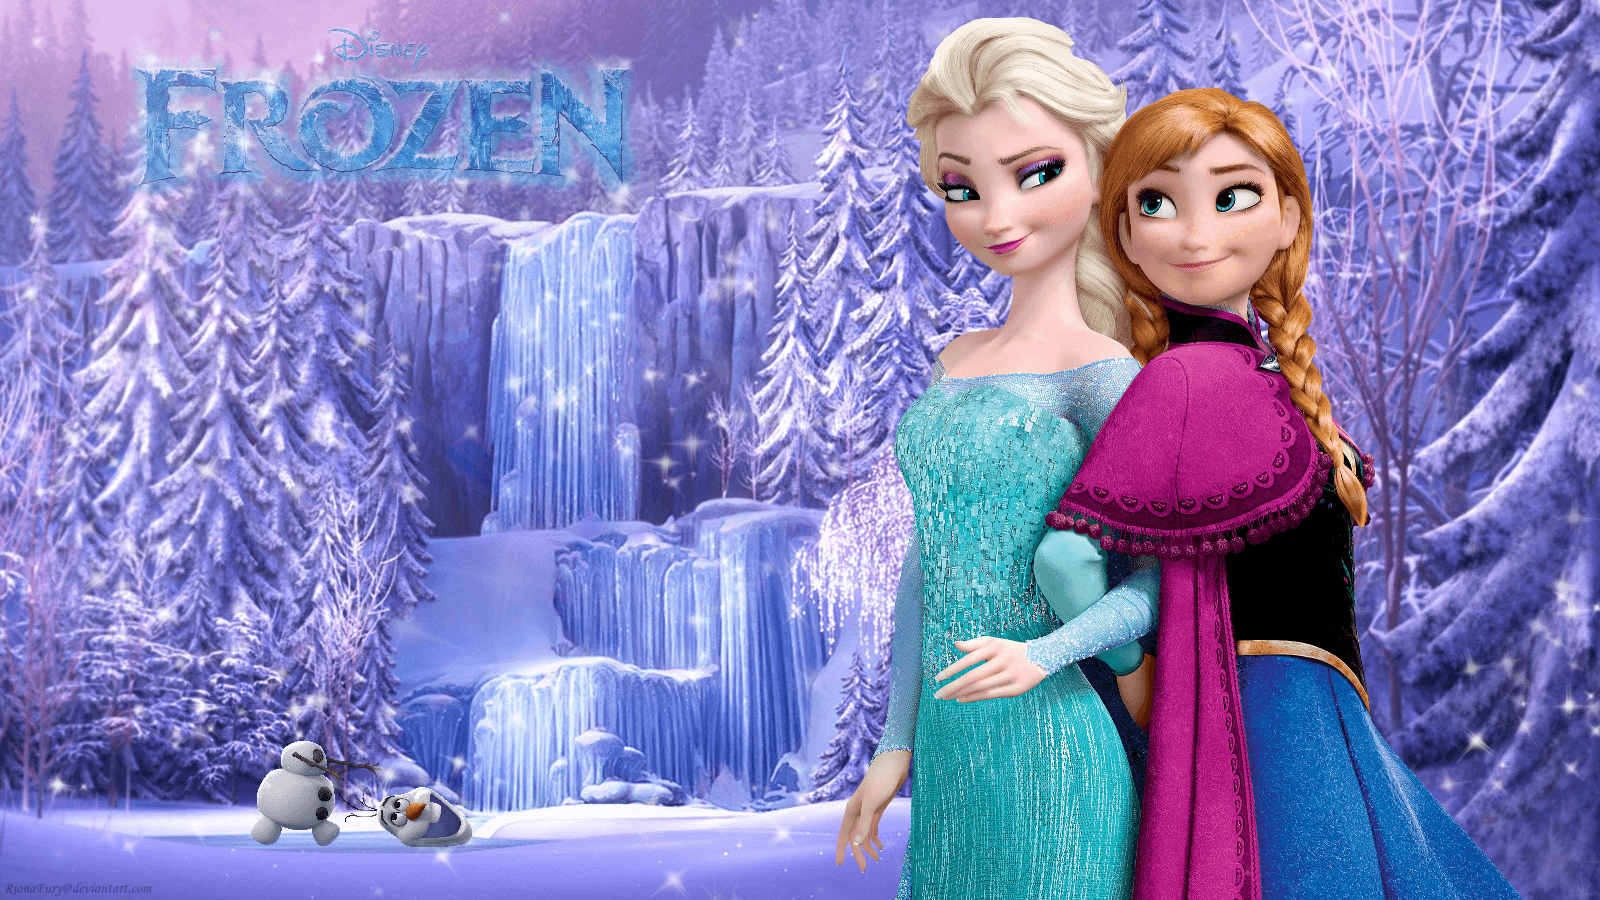 Frozen Sisters Frozen, HD Wallpaper & background